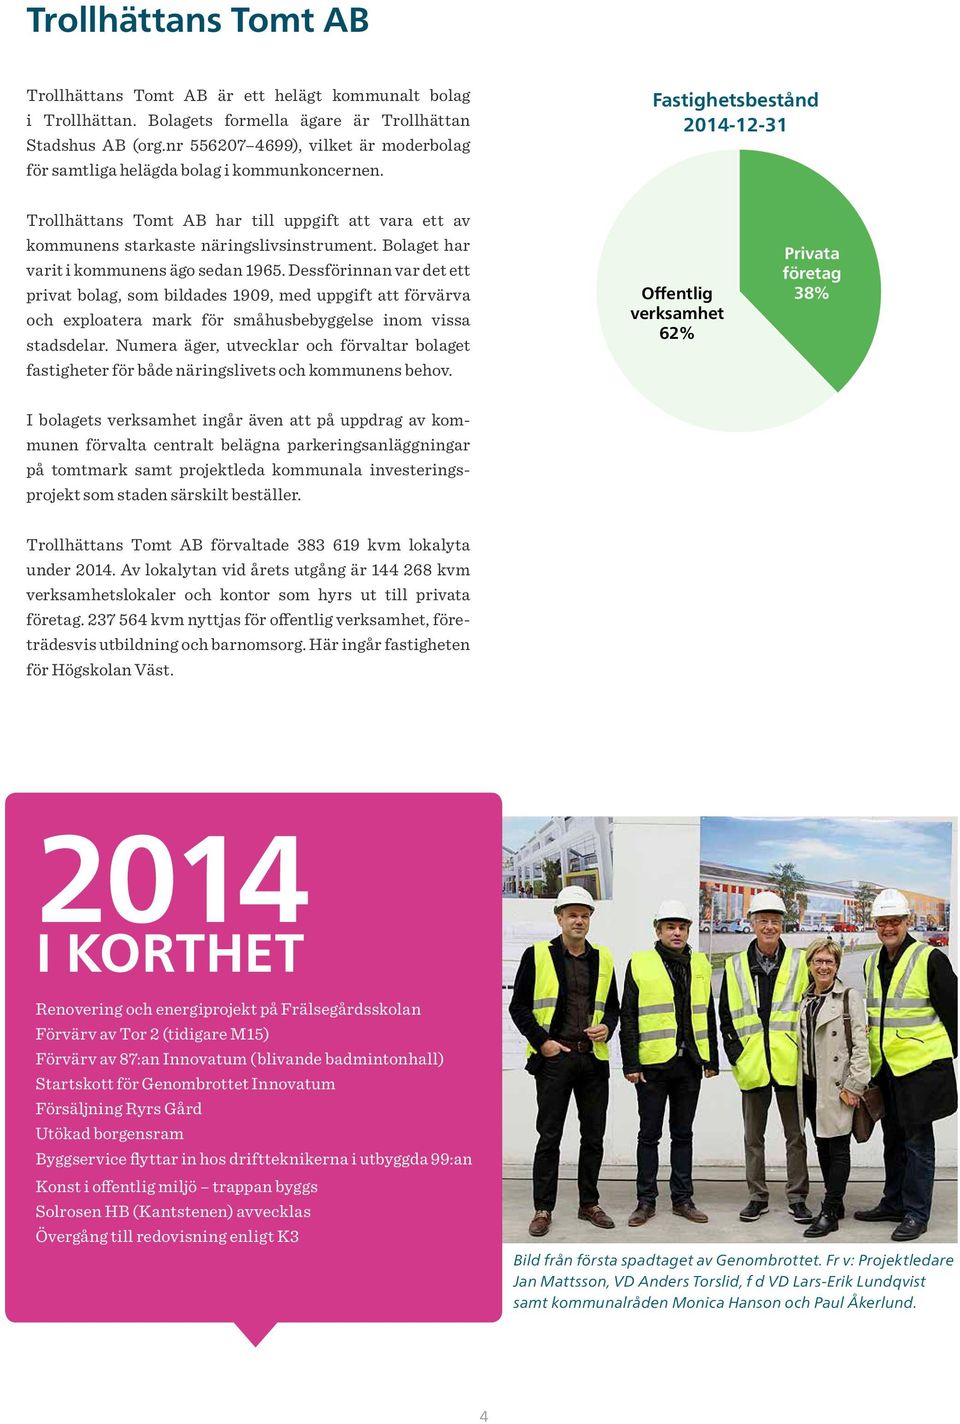 Fastighetsbestånd 2014-12-31 Trollhättans Tomt AB har till uppgift att vara ett av kommunens starkaste näringslivsinstrument. Bolaget har varit i kommunens ägo sedan 1965.